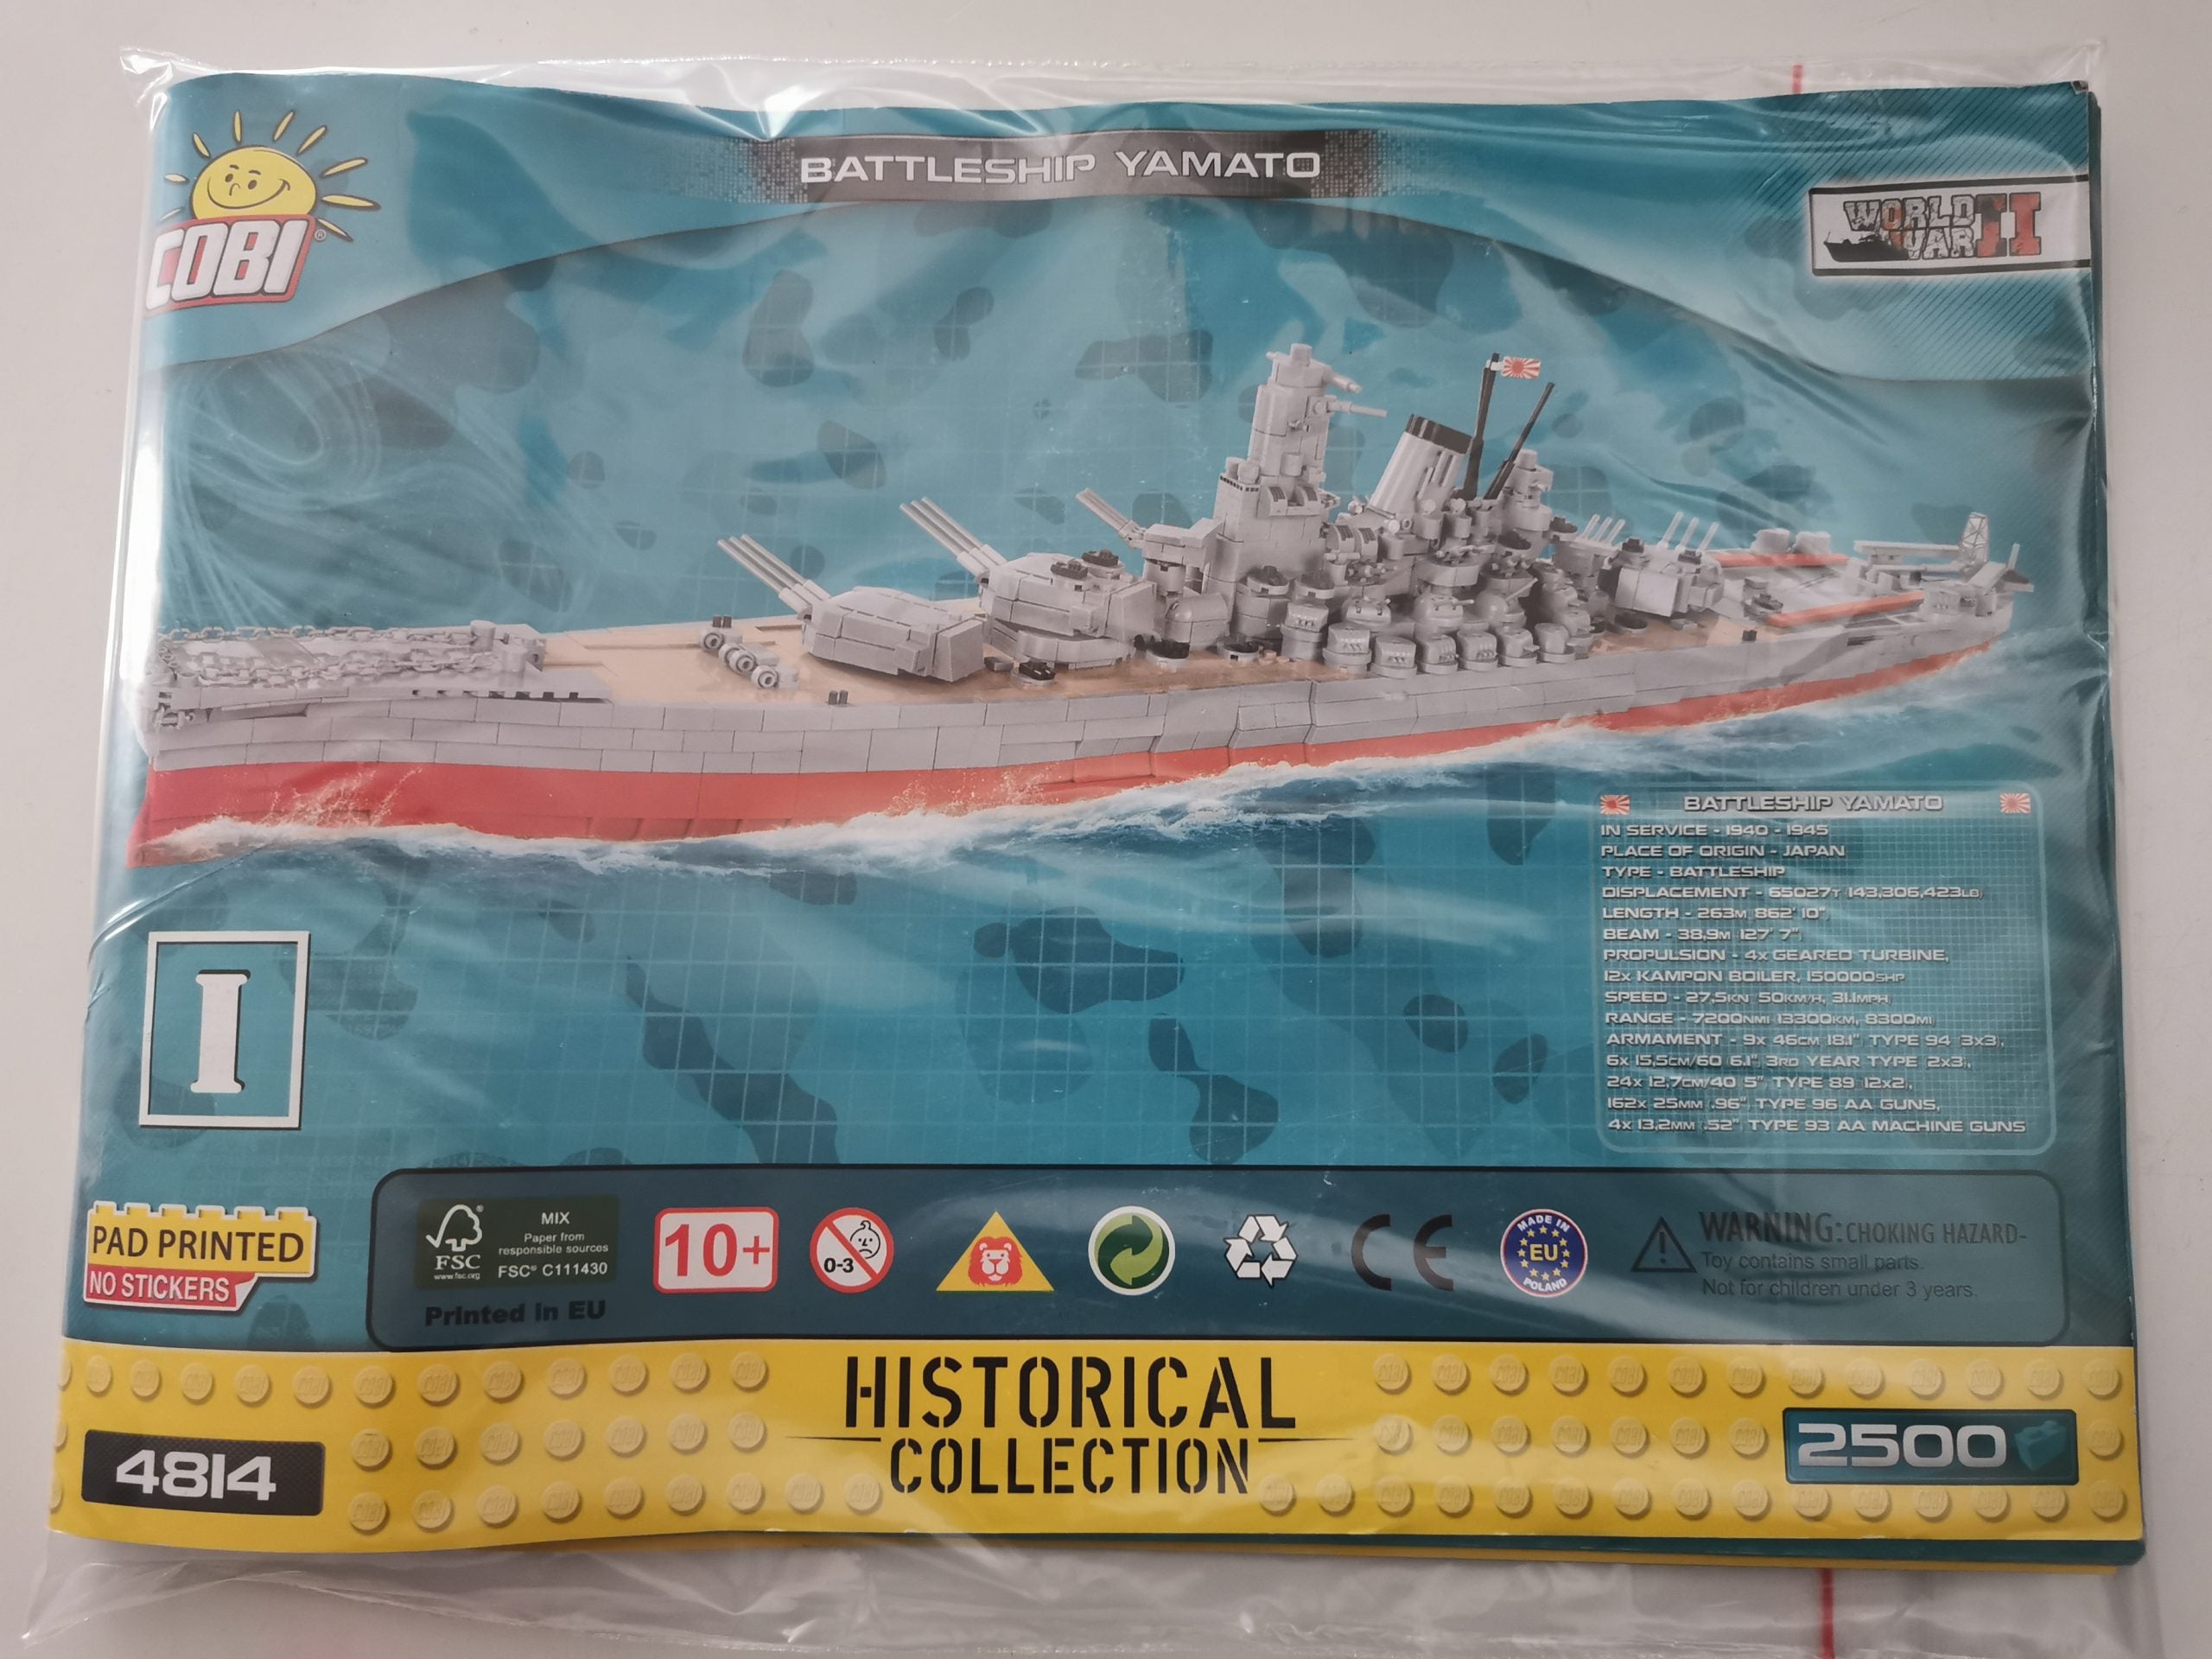 Cobi 4814 Battleship Yamato used